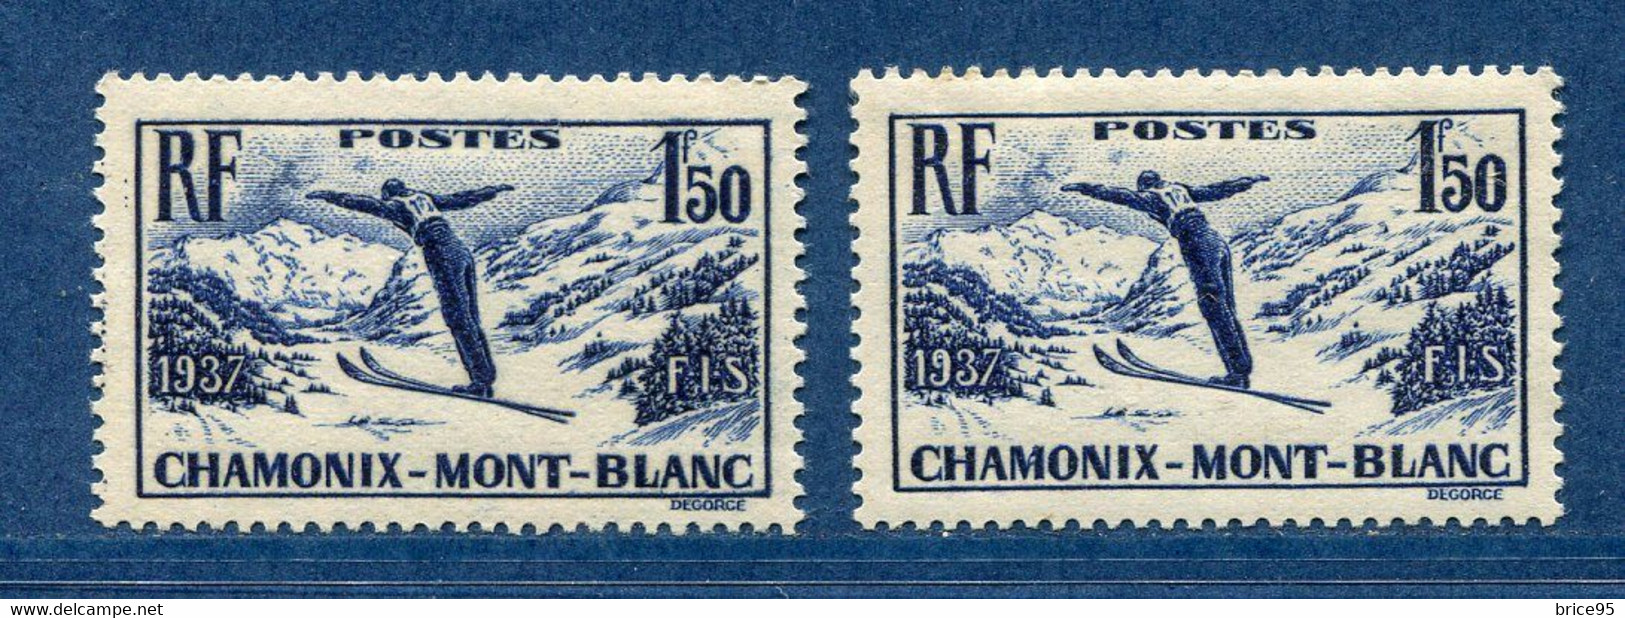 ⭐ France - Variété - YT N° 334 - Couleurs - Papier Jaunatre - Neuf Sans Charnière - 1937 ⭐ - Neufs